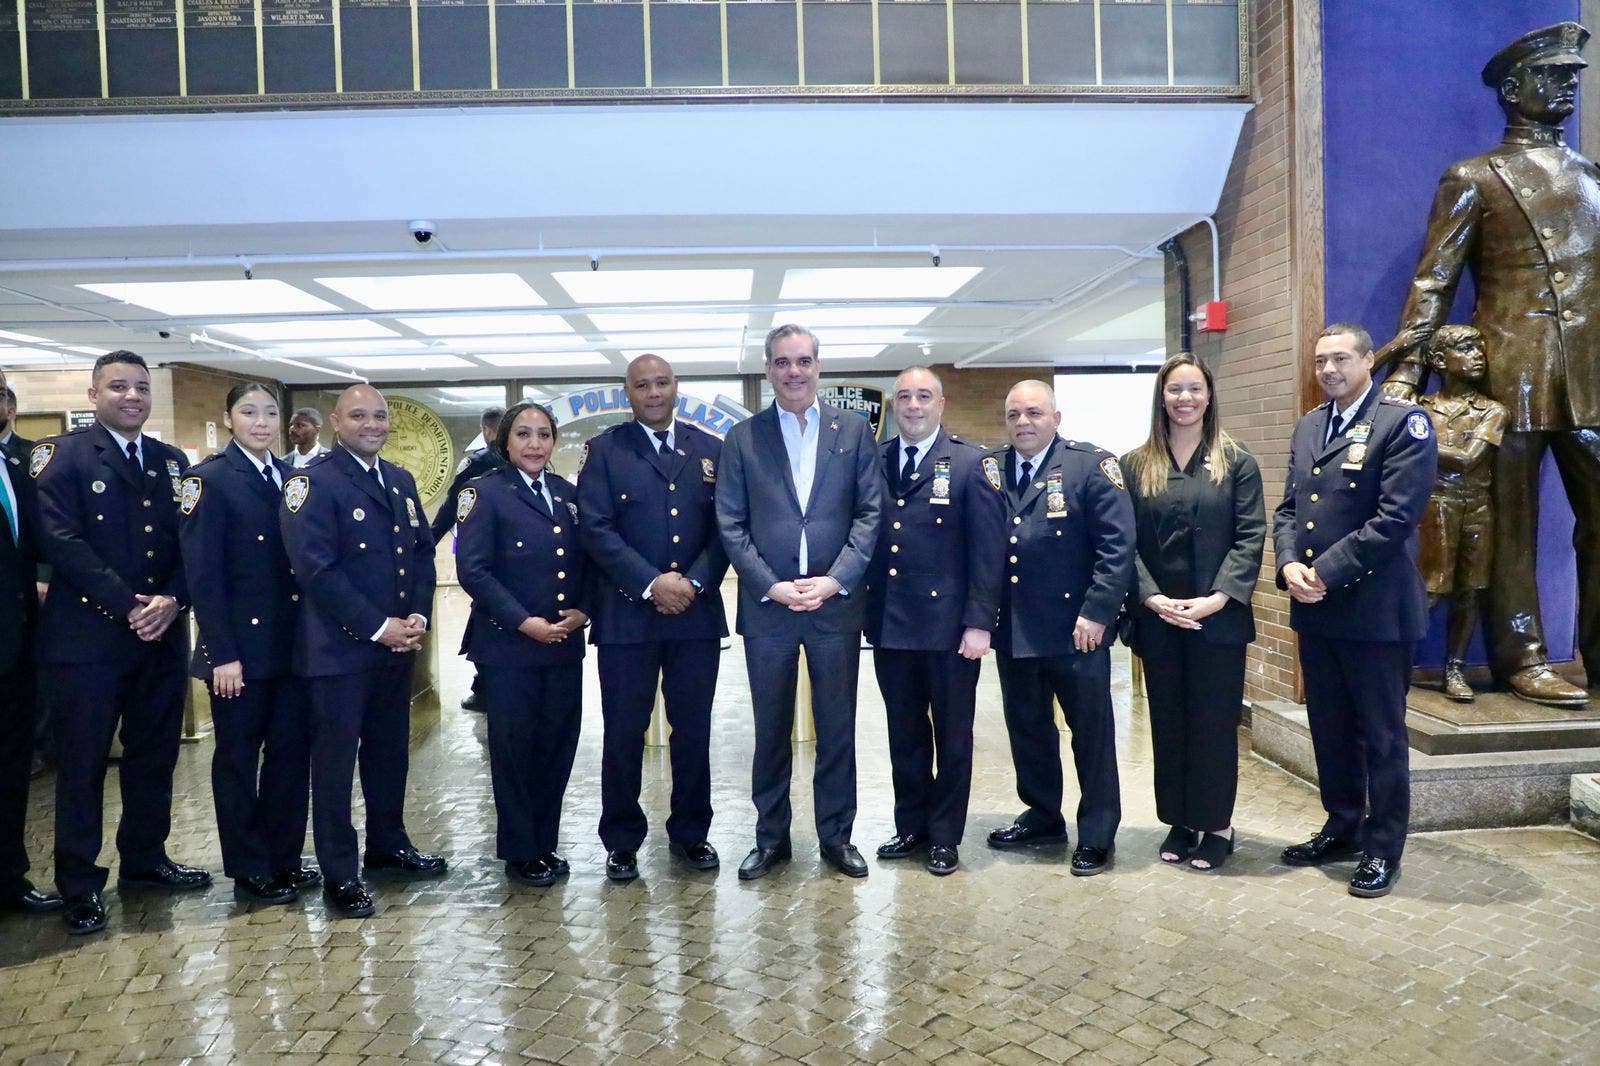 Unión Internacional de Oficiales y Civiles en NY reconoce a Abinader por avances en reforma policial